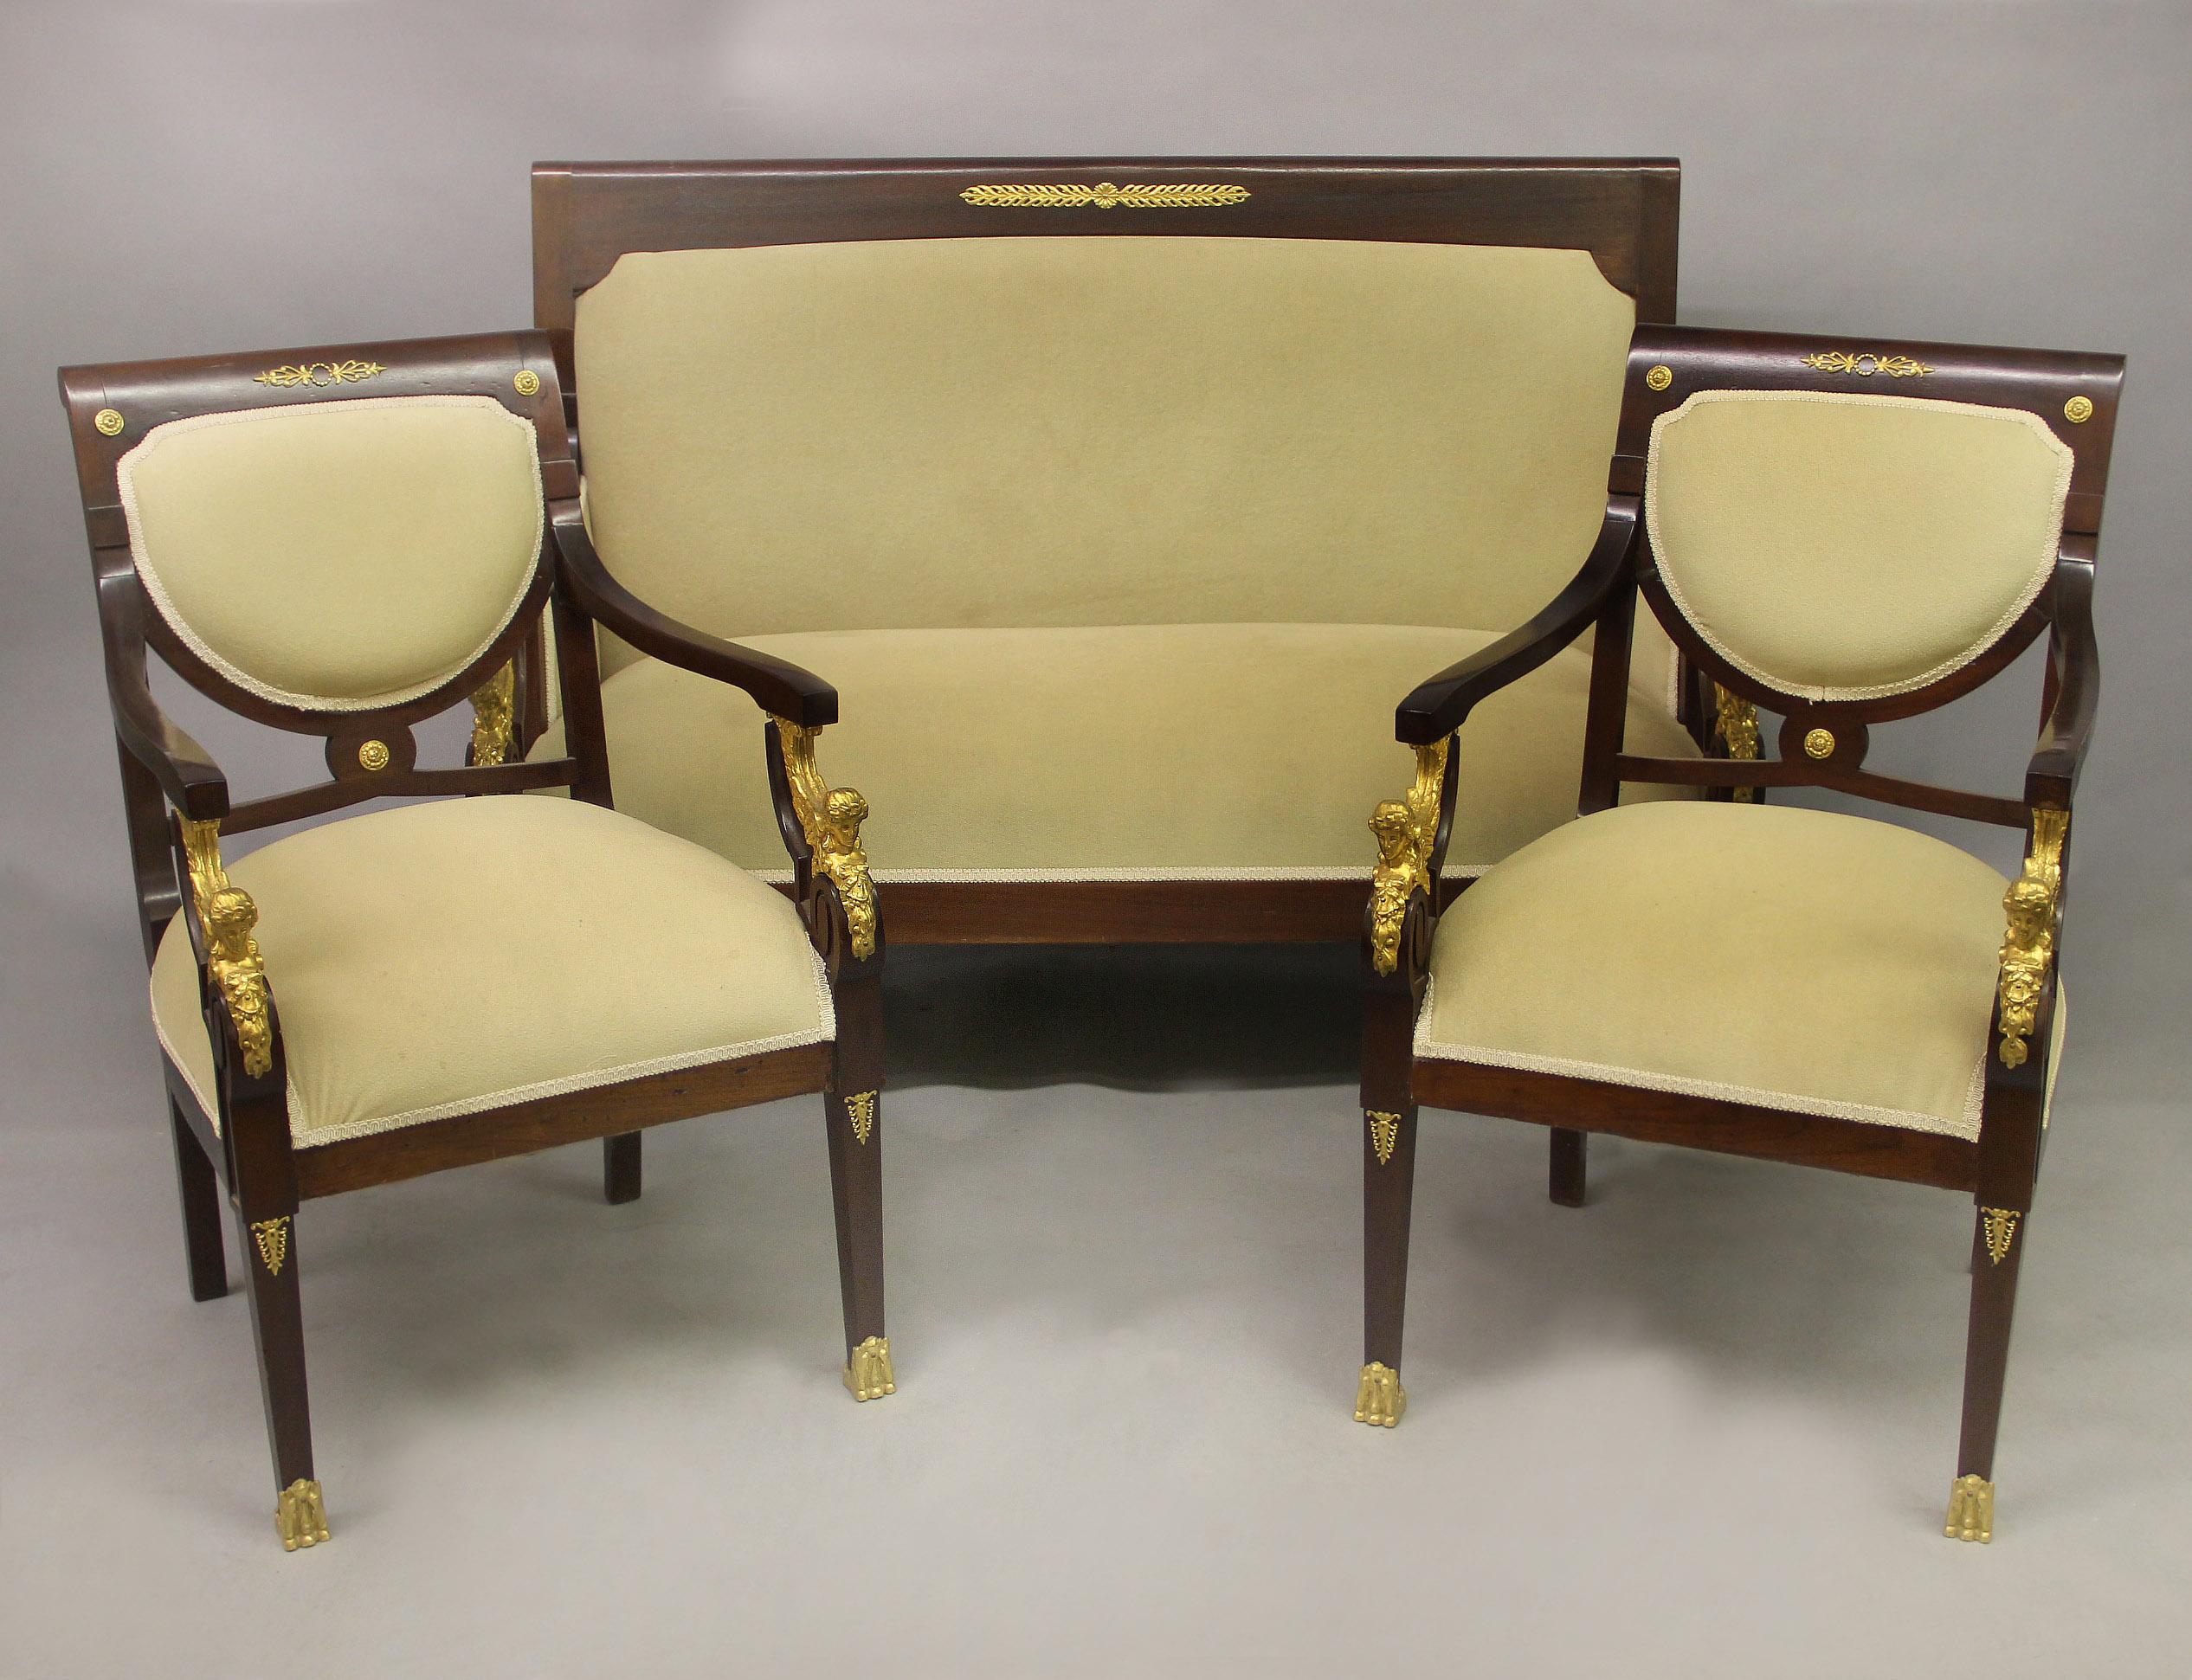 Un joli ensemble de salon de style empire de la fin du 19ème / début du 20ème siècle monté en bronze doré.

Comprenant un canapé et une paire de fauteuils.

Les dossiers rectangulaires mènent à des bras ondulés, chacun soutenu par un sphinx